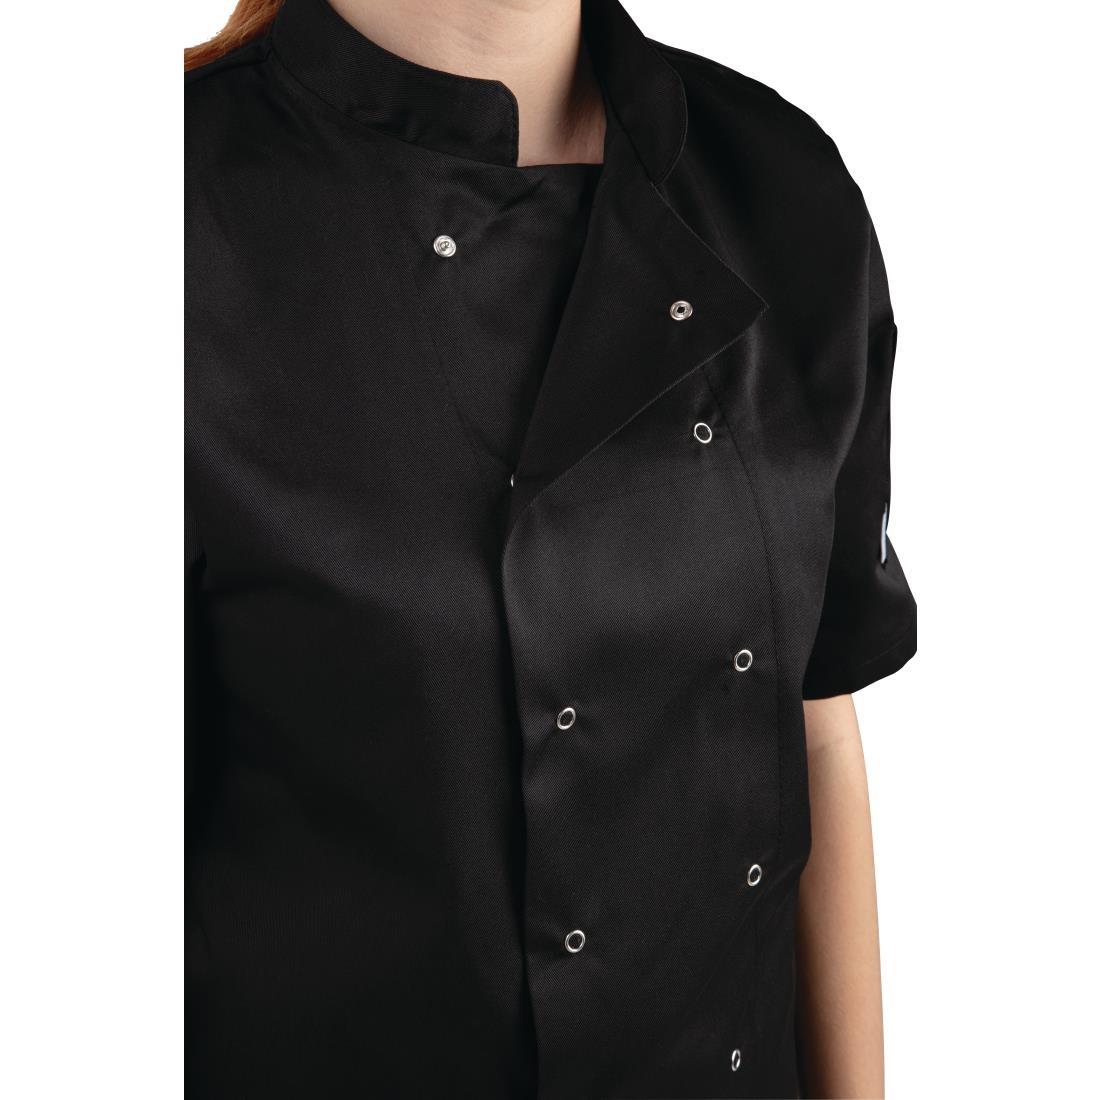 Whites Vegas Unisex Chefs Jacket Short Sleeve Black XS - A439-XS  - 2